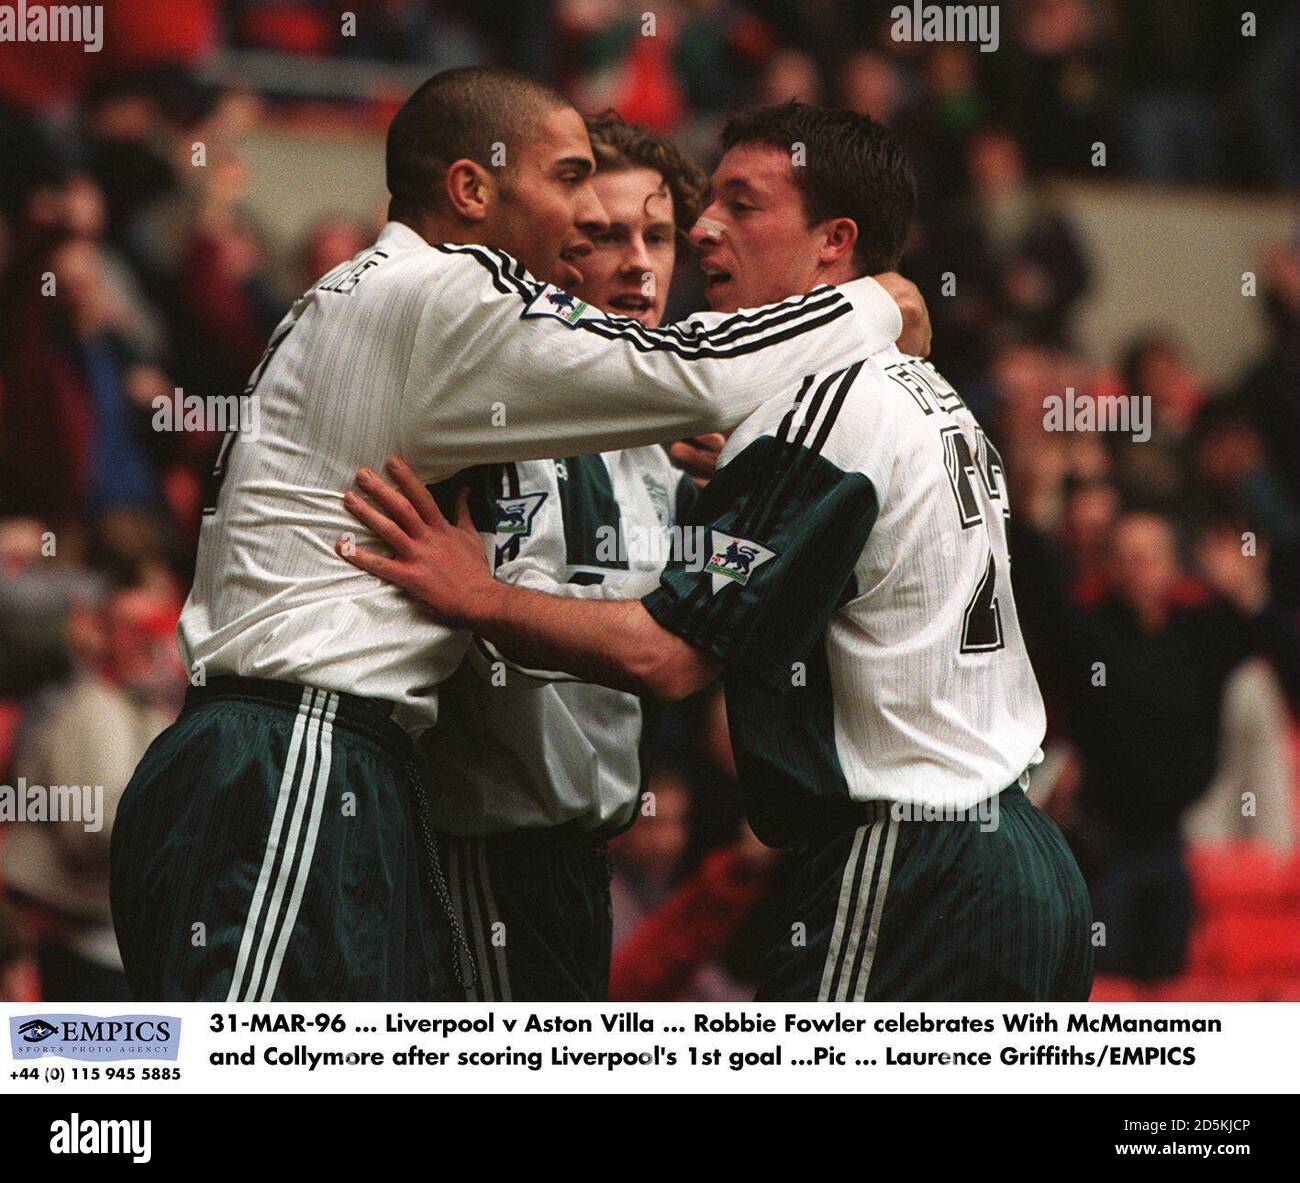 Robbie Fowler celebra con McManaman y Collymore después de anotar Liverpool's. Primer gol contra Aston Villa Foto de stock